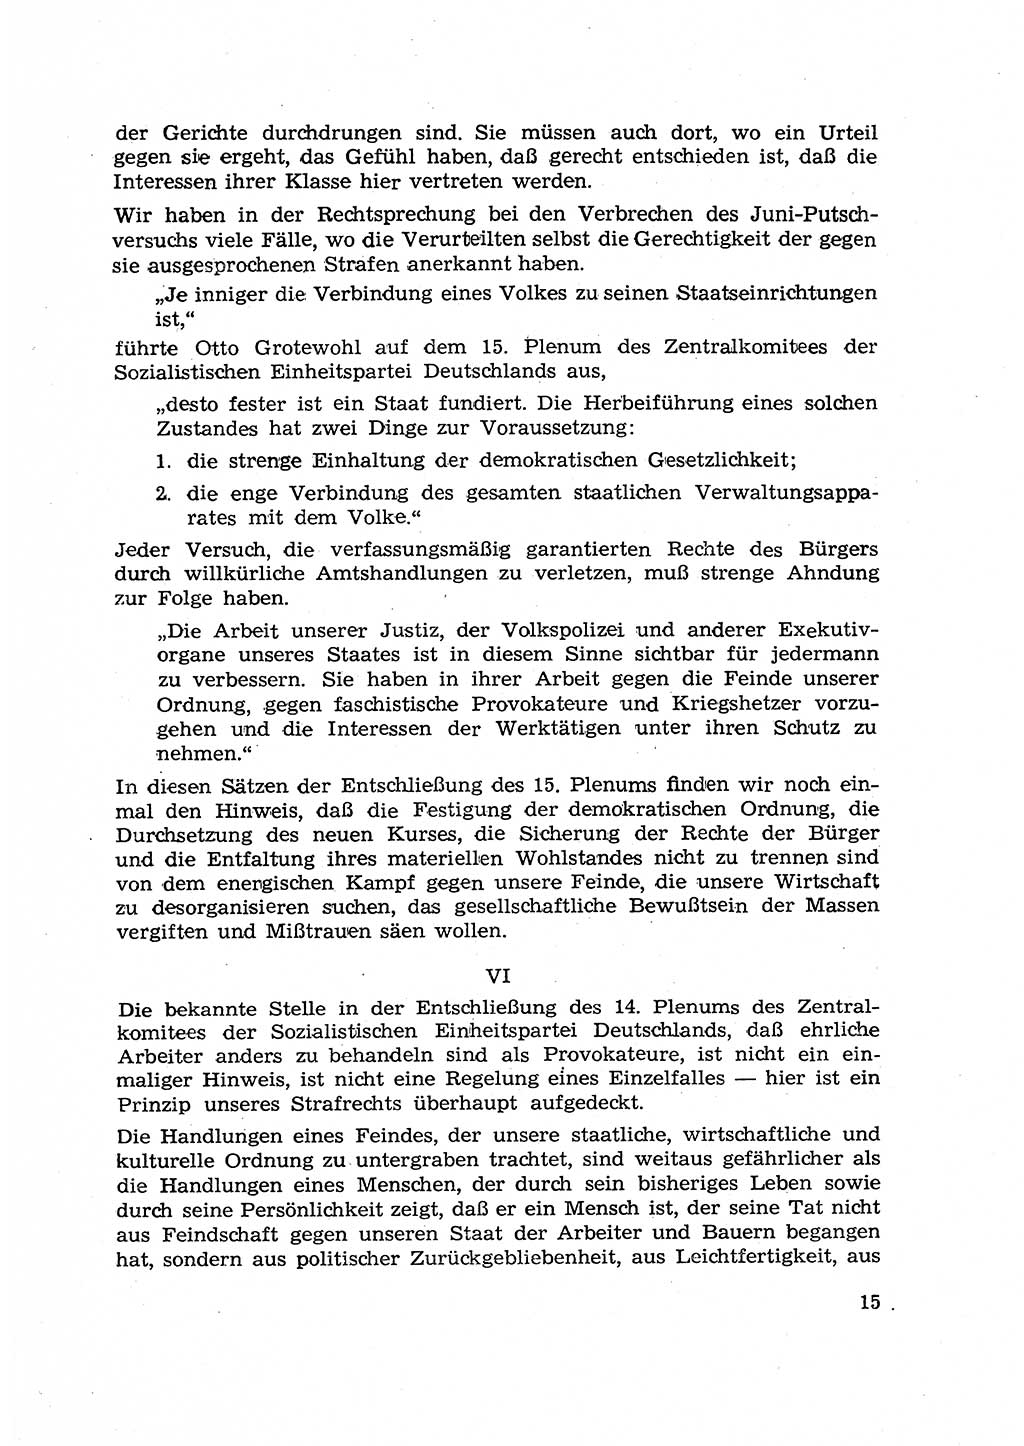 Hauptaufgaben der Justiz [Deutsche Demokratische Republik (DDR)] bei der Durchführung des neuen Kurses 1953, Seite 15 (Hpt.-Aufg. J. DDR 1953, S. 15)